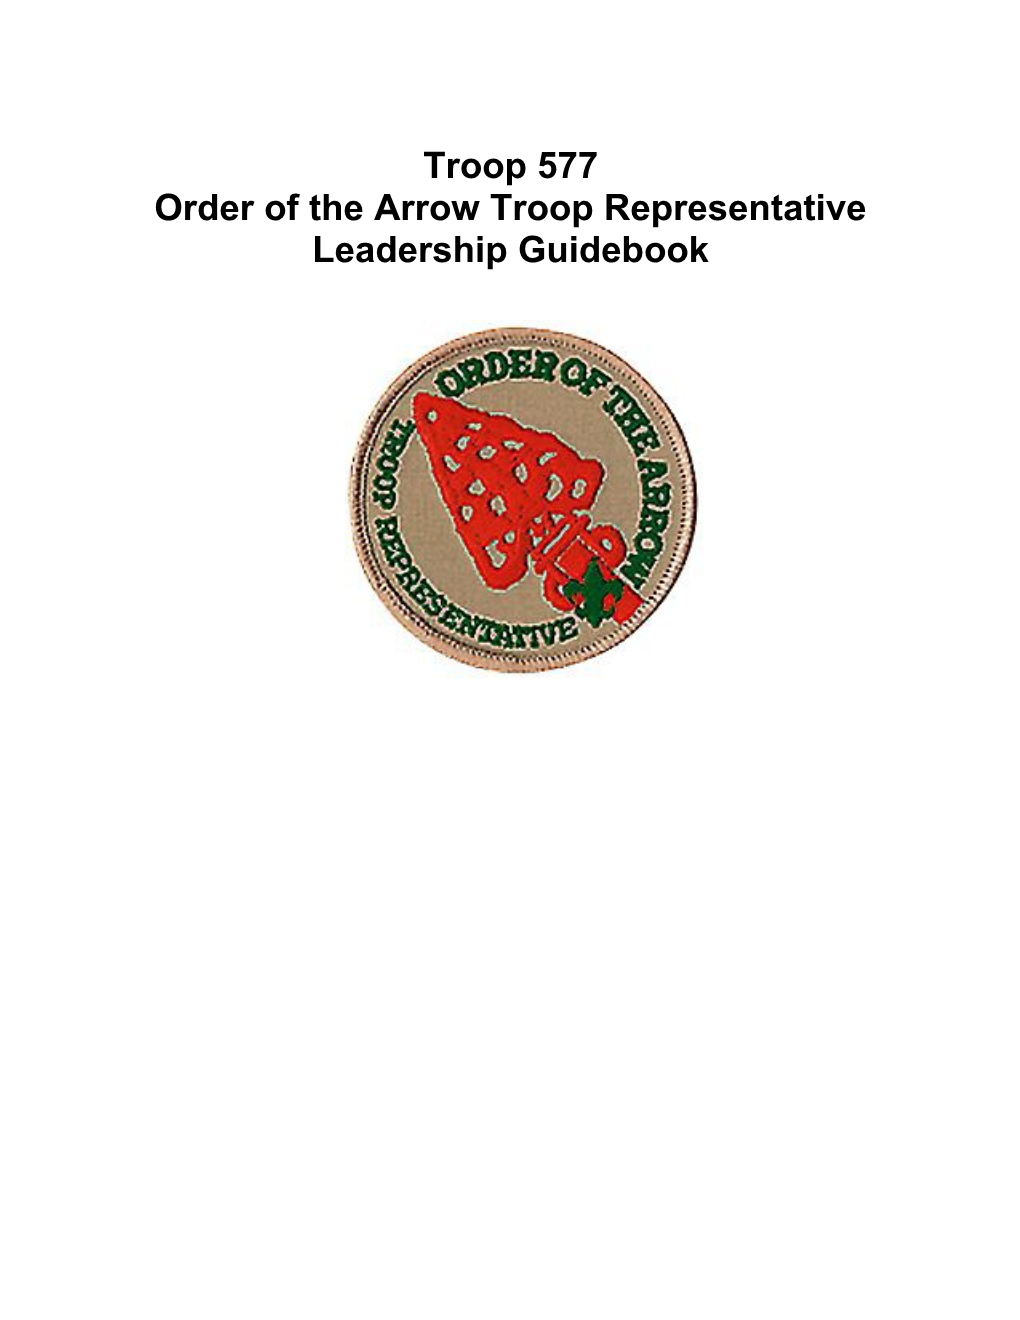 Order of the Arrow Troop Representative Leadership Guidebook